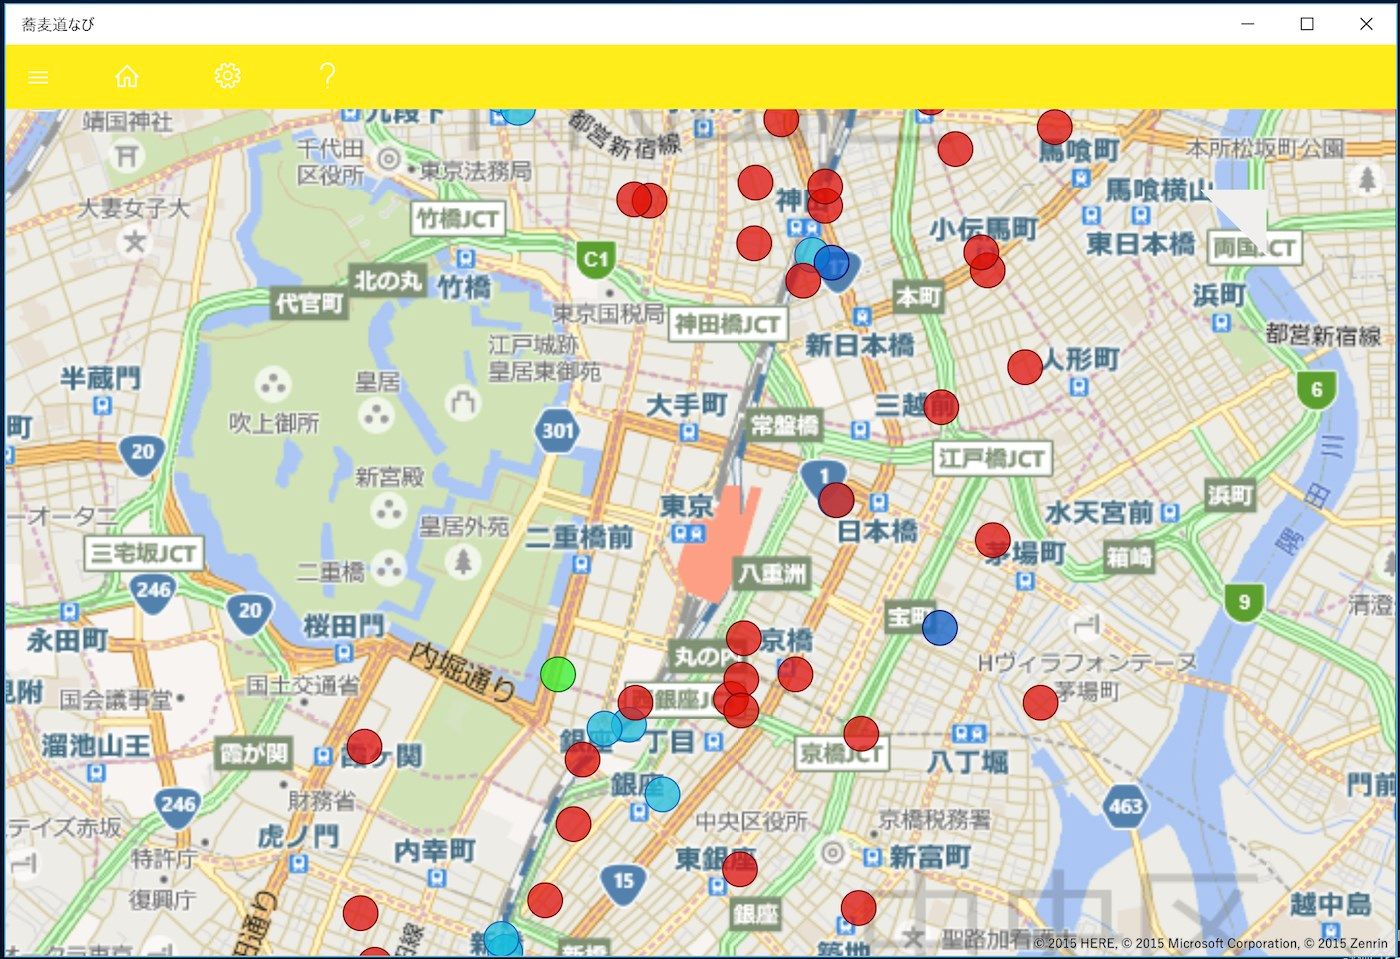 アプリを起動すると地図上に立ち食いそば屋の地点が表示されます。マーカーをタップすると店名などがポップアップ表示されます。